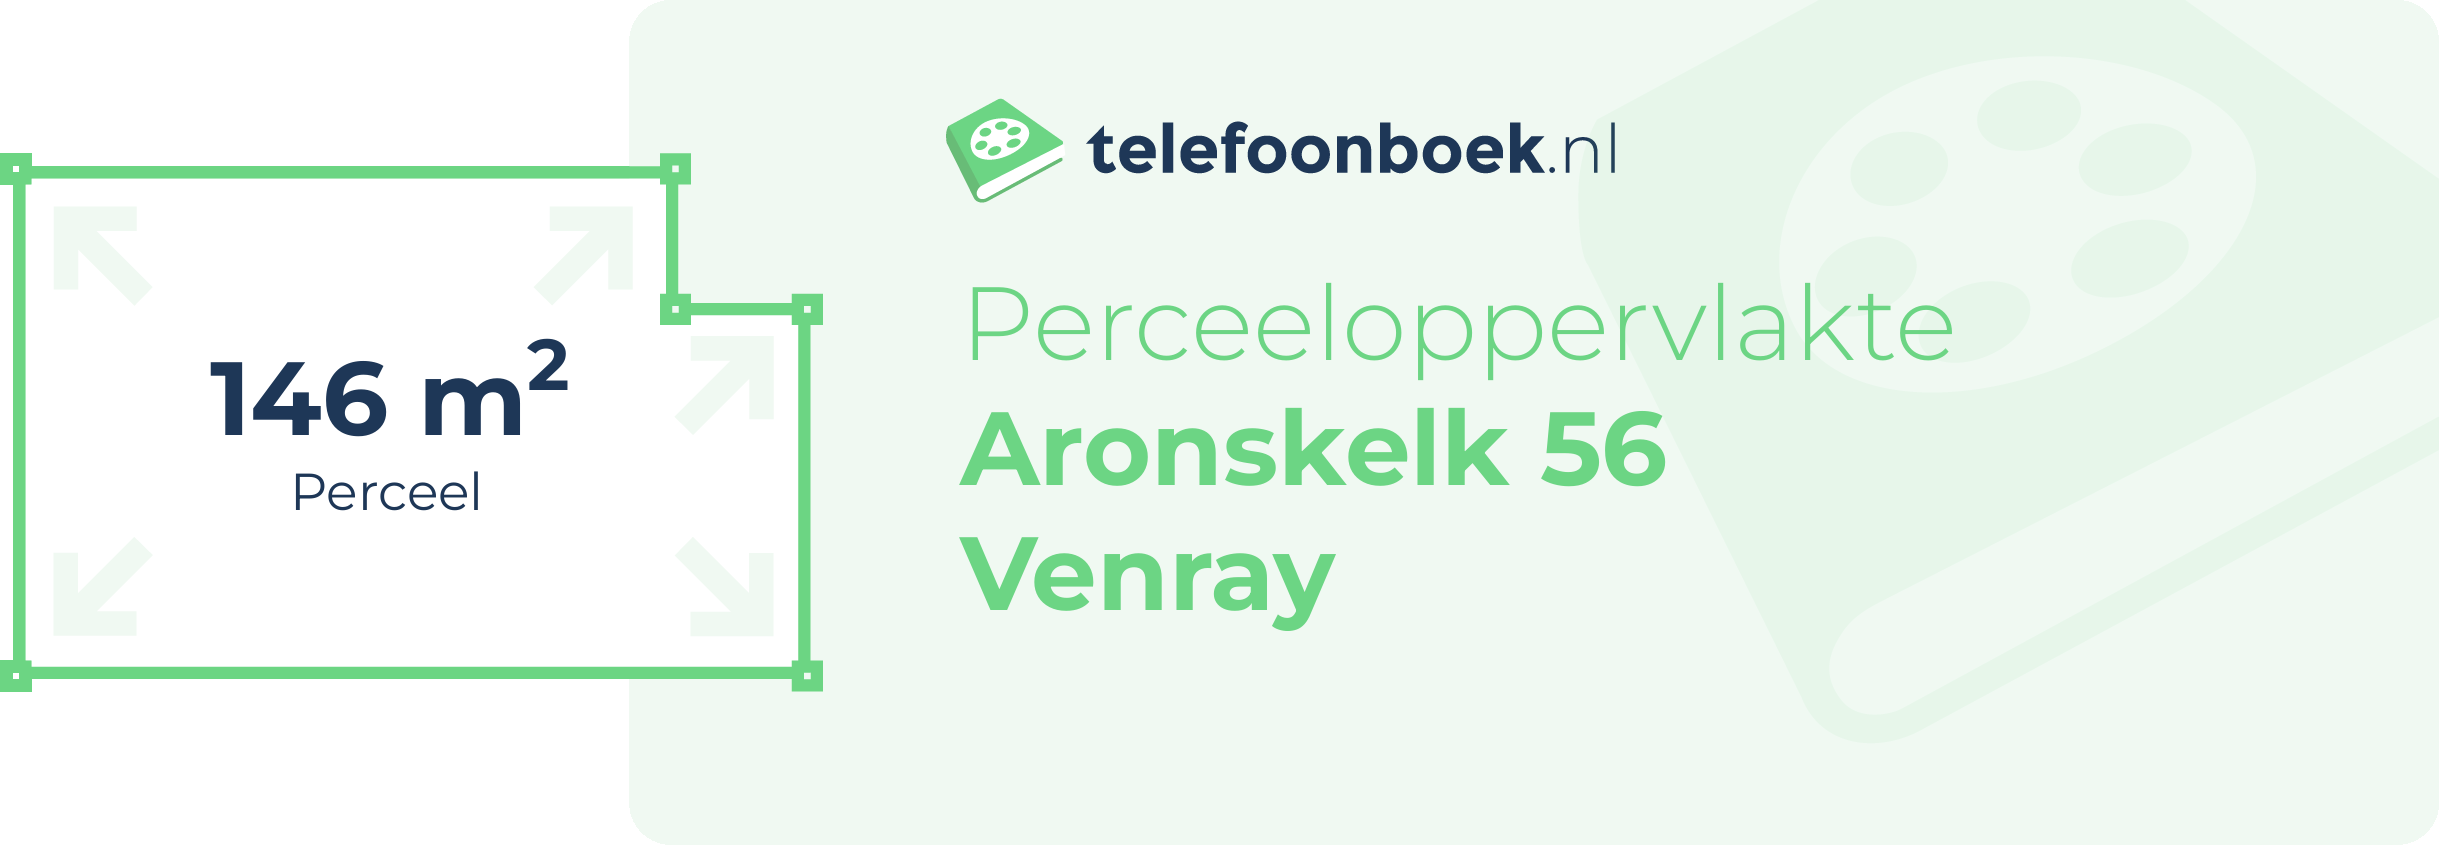 Perceeloppervlakte Aronskelk 56 Venray